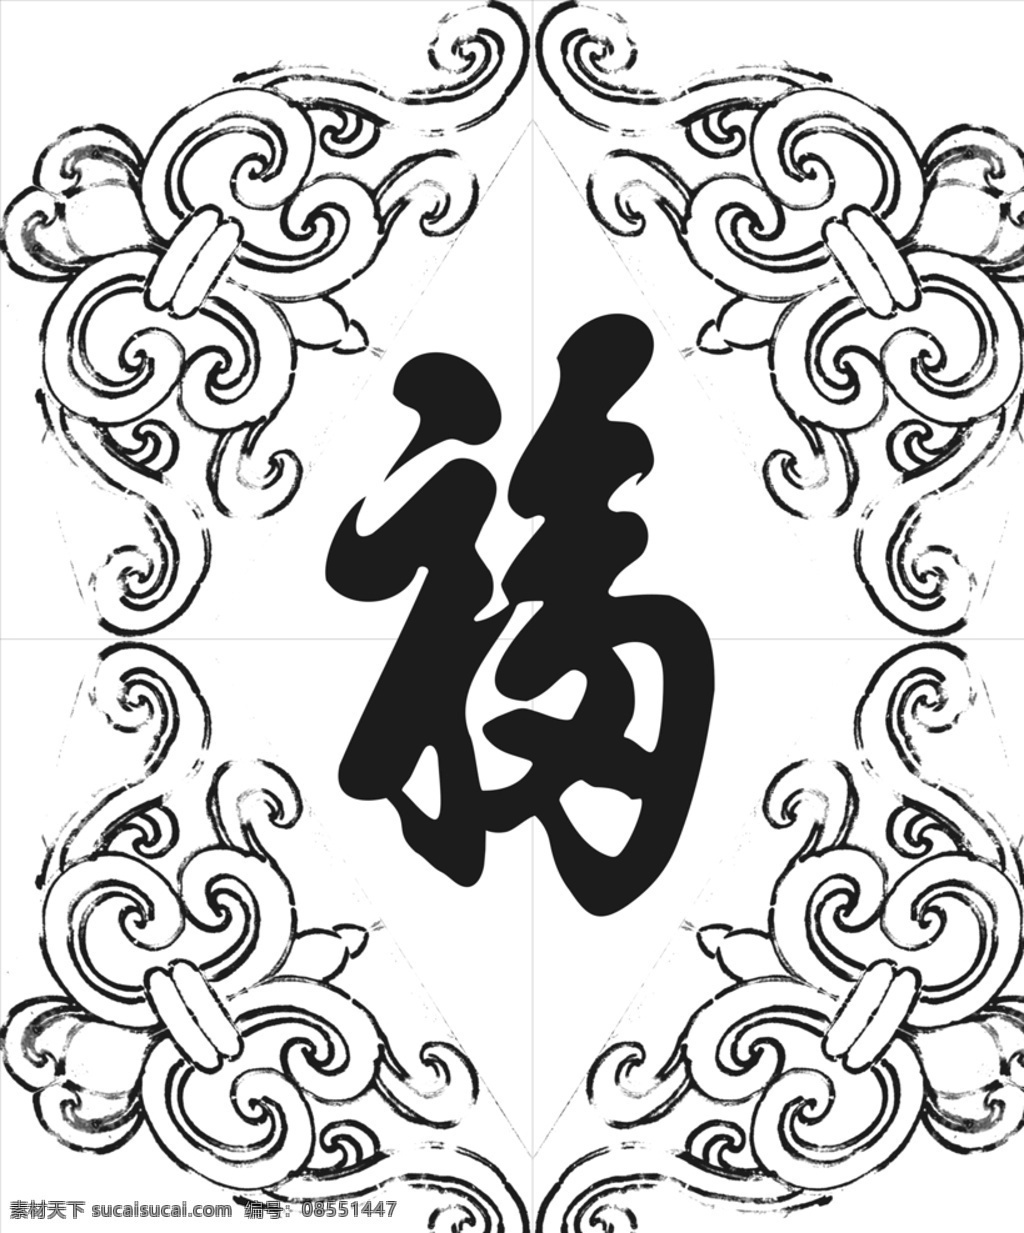 福图片 福 五福临门 福纹理 草花 浮雕 纯 不是 矢量图 文化艺术 传统文化